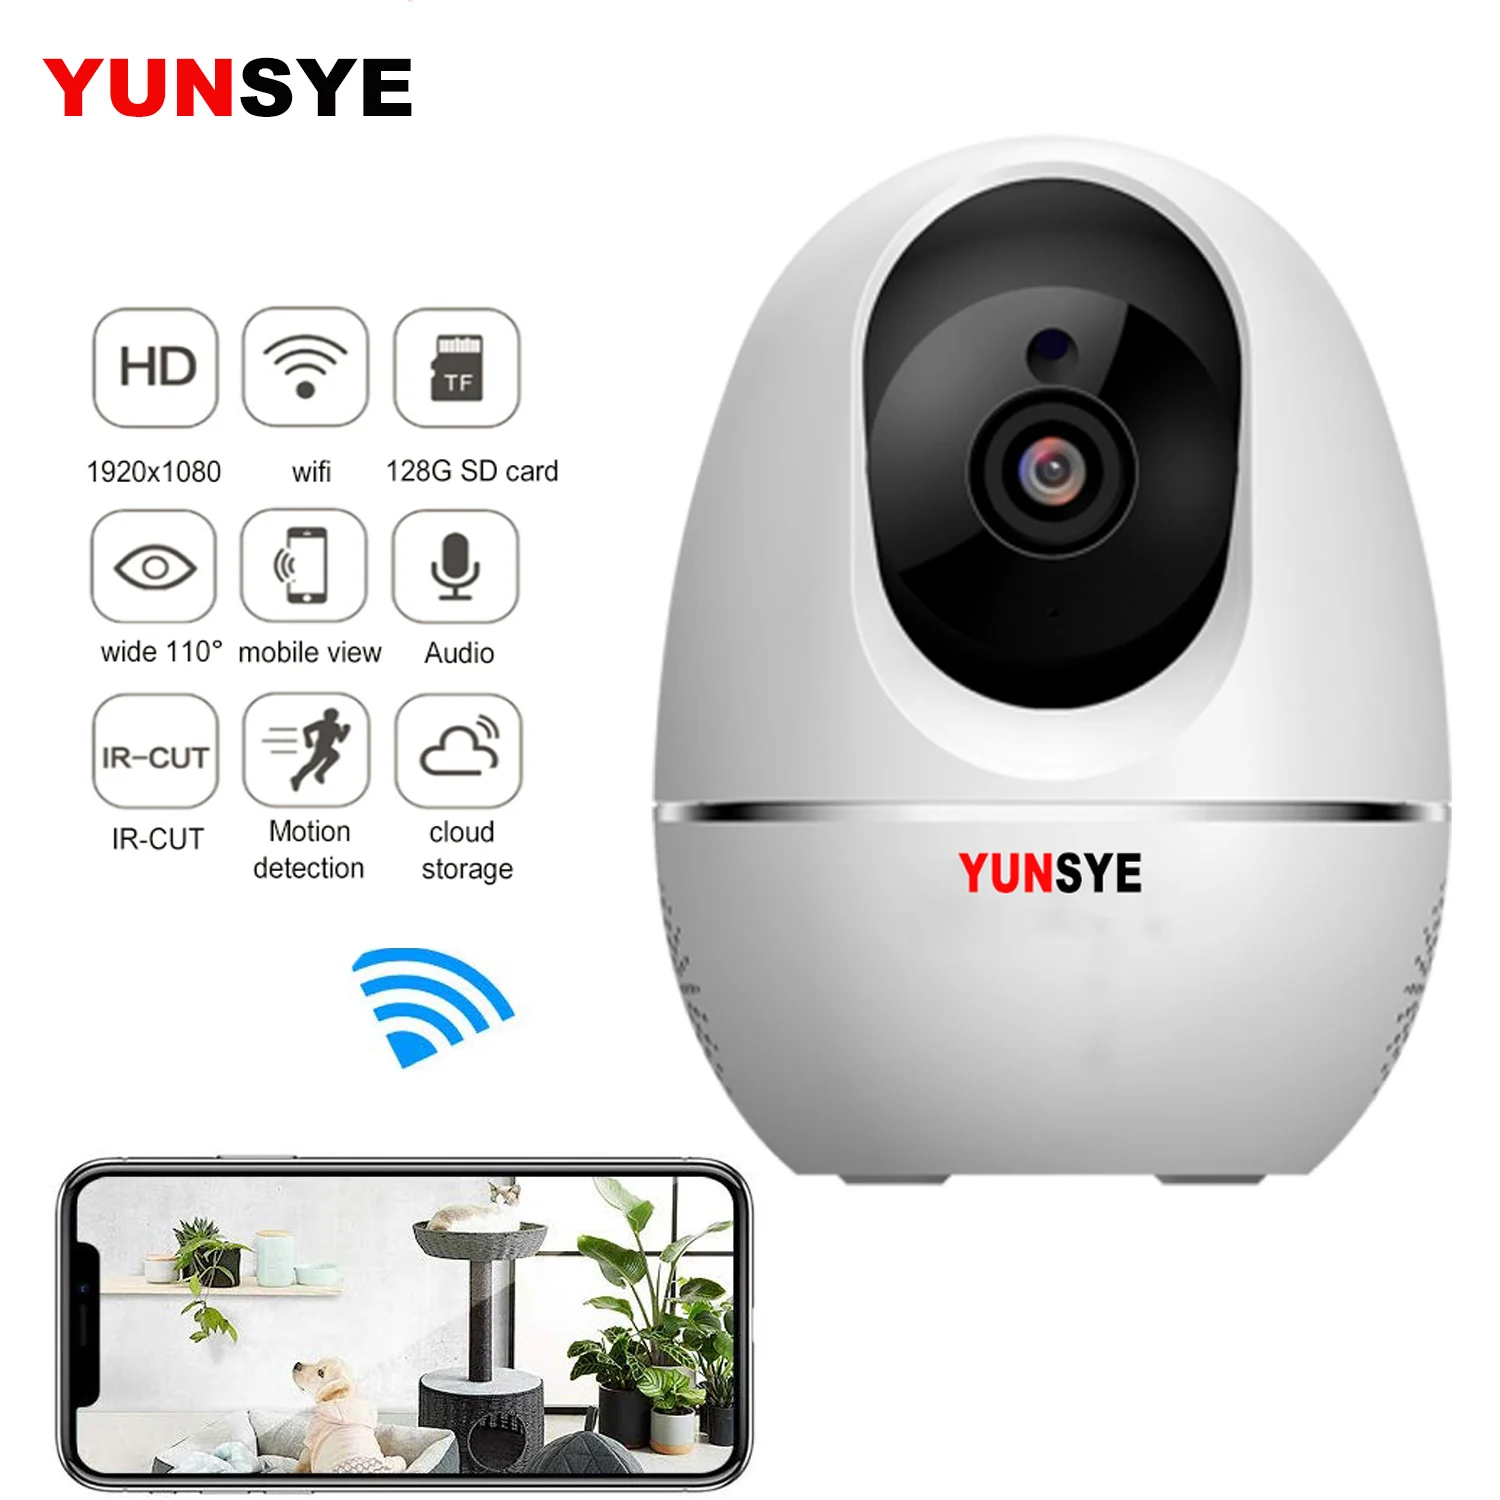 IP-камера YUNSYE 1080P для домашней системы безопасности с автоматическим отслеживанием, беспроводная мини-камера ночного видения CCTV, Wi-Fi камера М... от AliExpress RU&CIS NEW